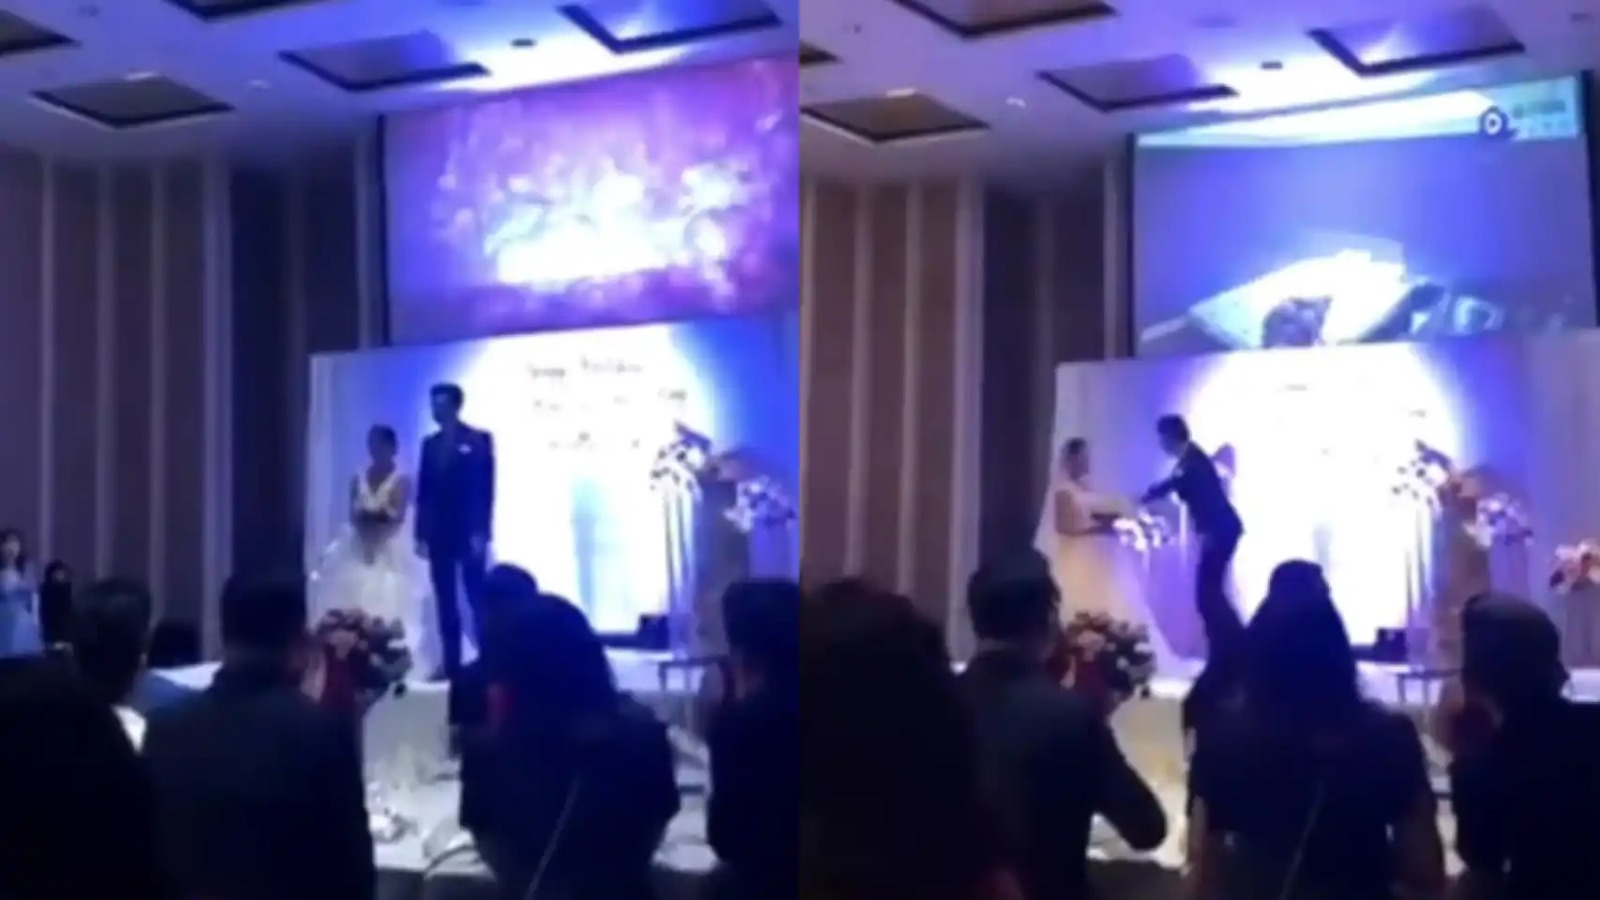 Qué vergüenza: esperó a casarse y en plena ceremonia mostró video de su esposa siéndole infiel